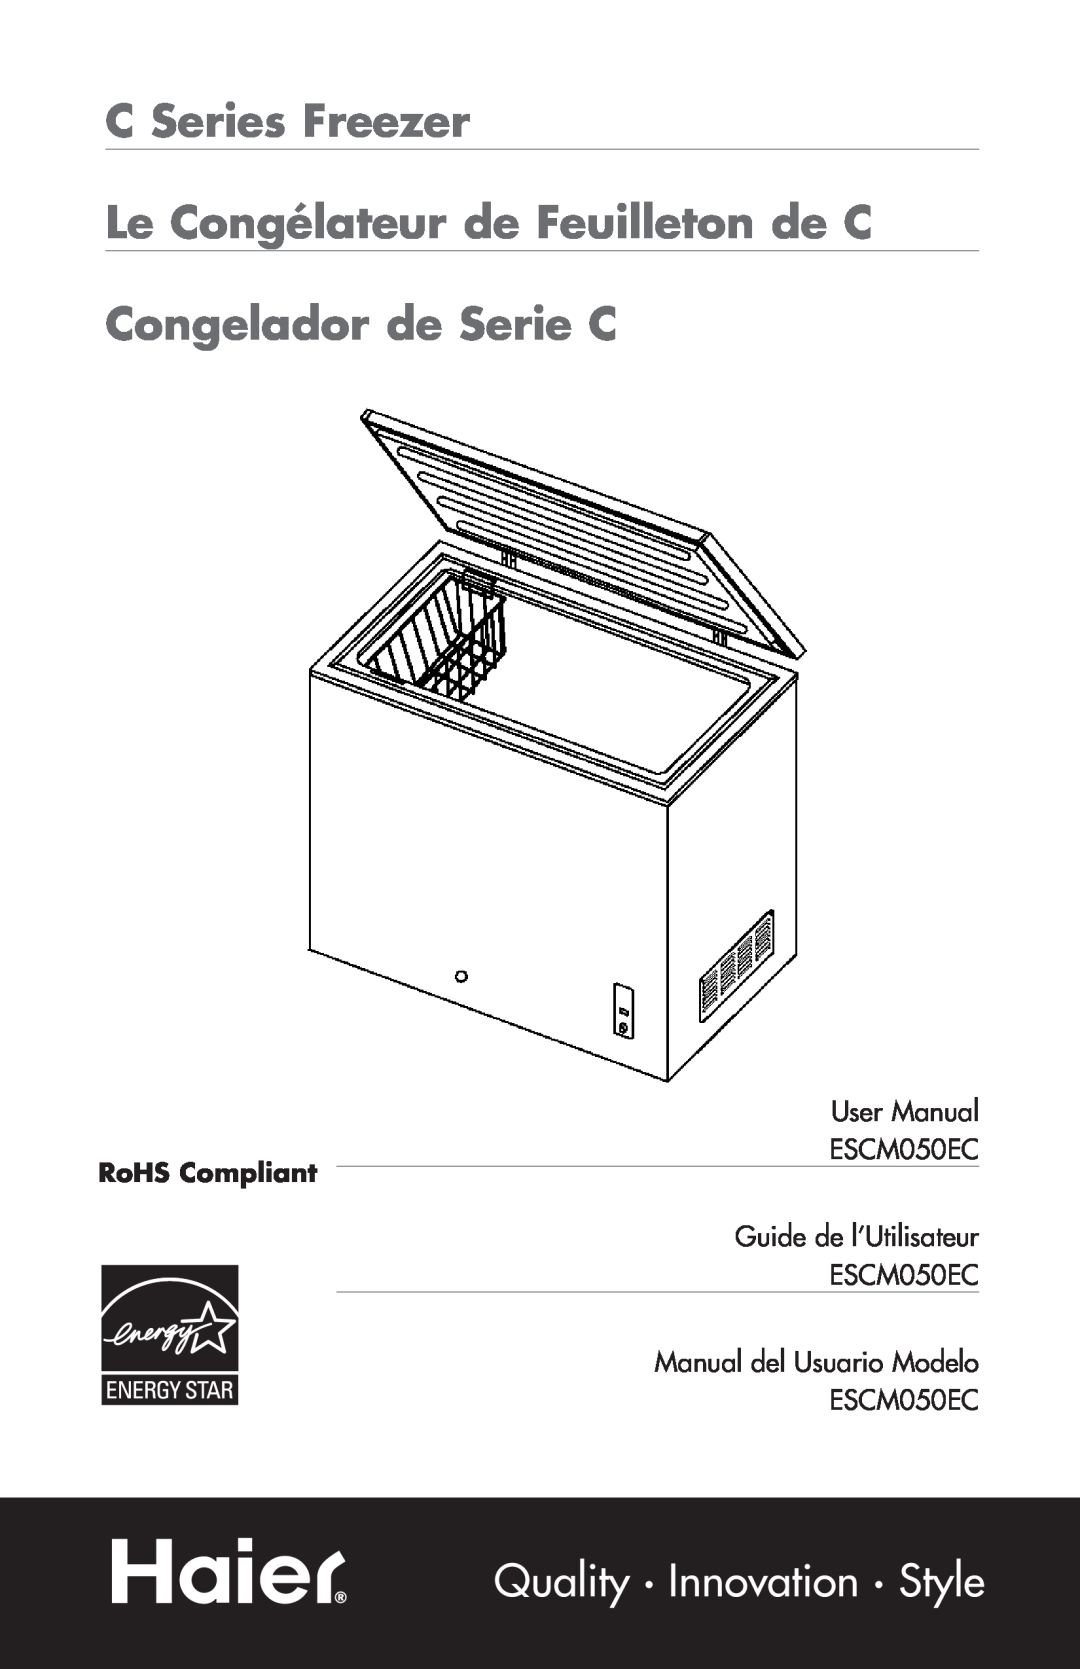 Haier ESCM050EC user manual RoHS Compliant, C Series Freezer, Le Congélateur de Feuilleton de C, Congelador de Serie C 